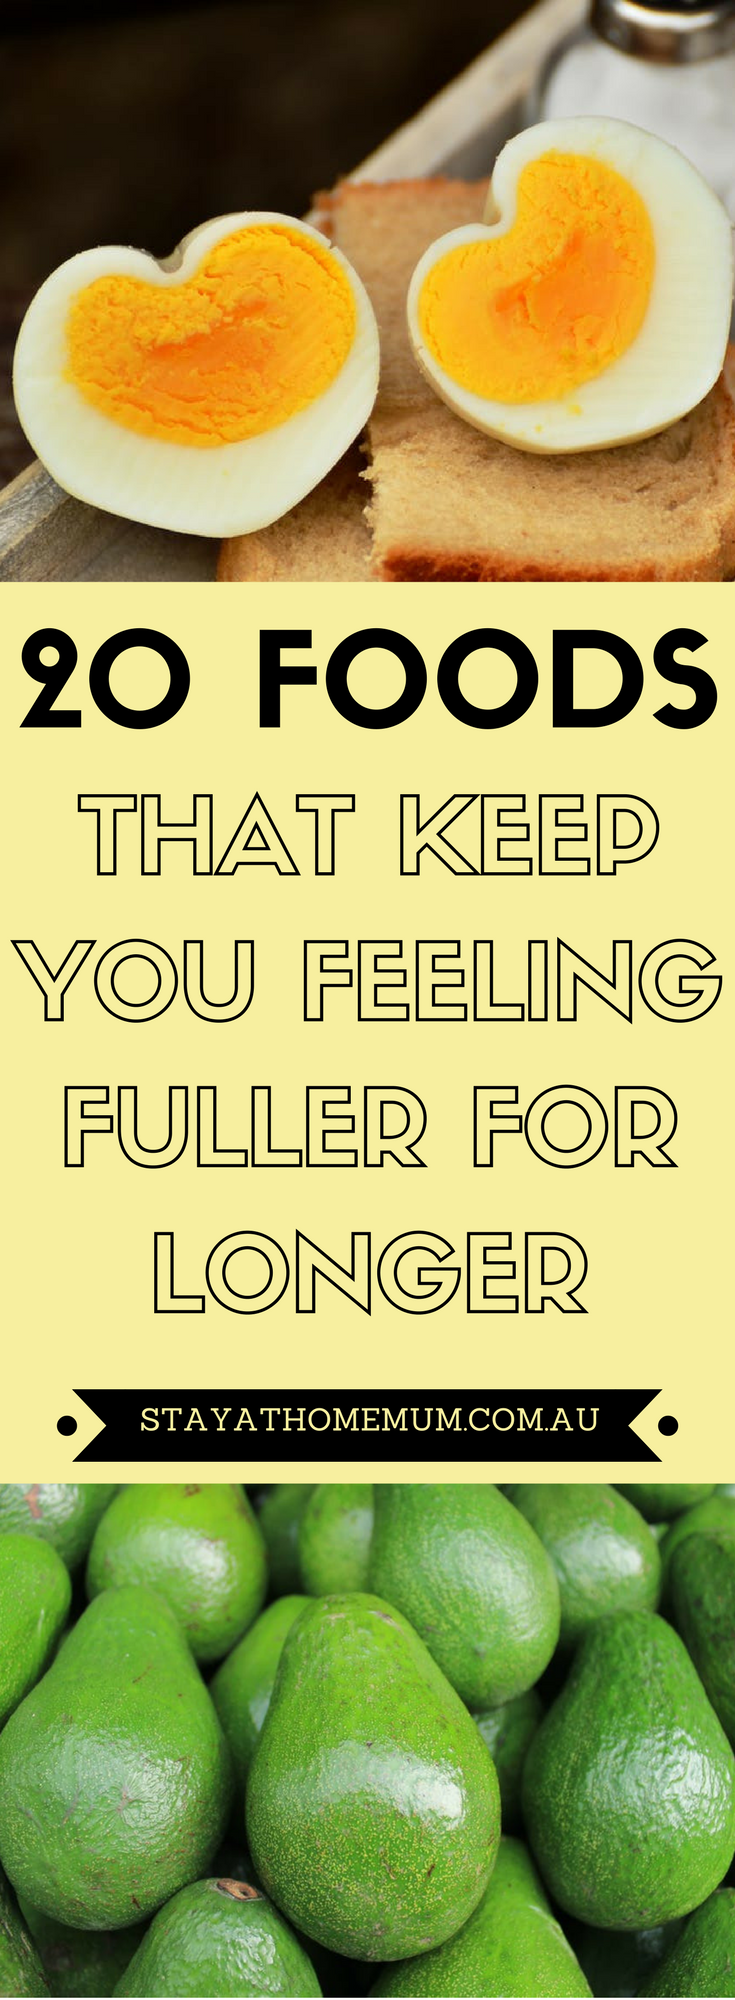 20 Foods That Keep You Feeling Fuller for Longer (1)